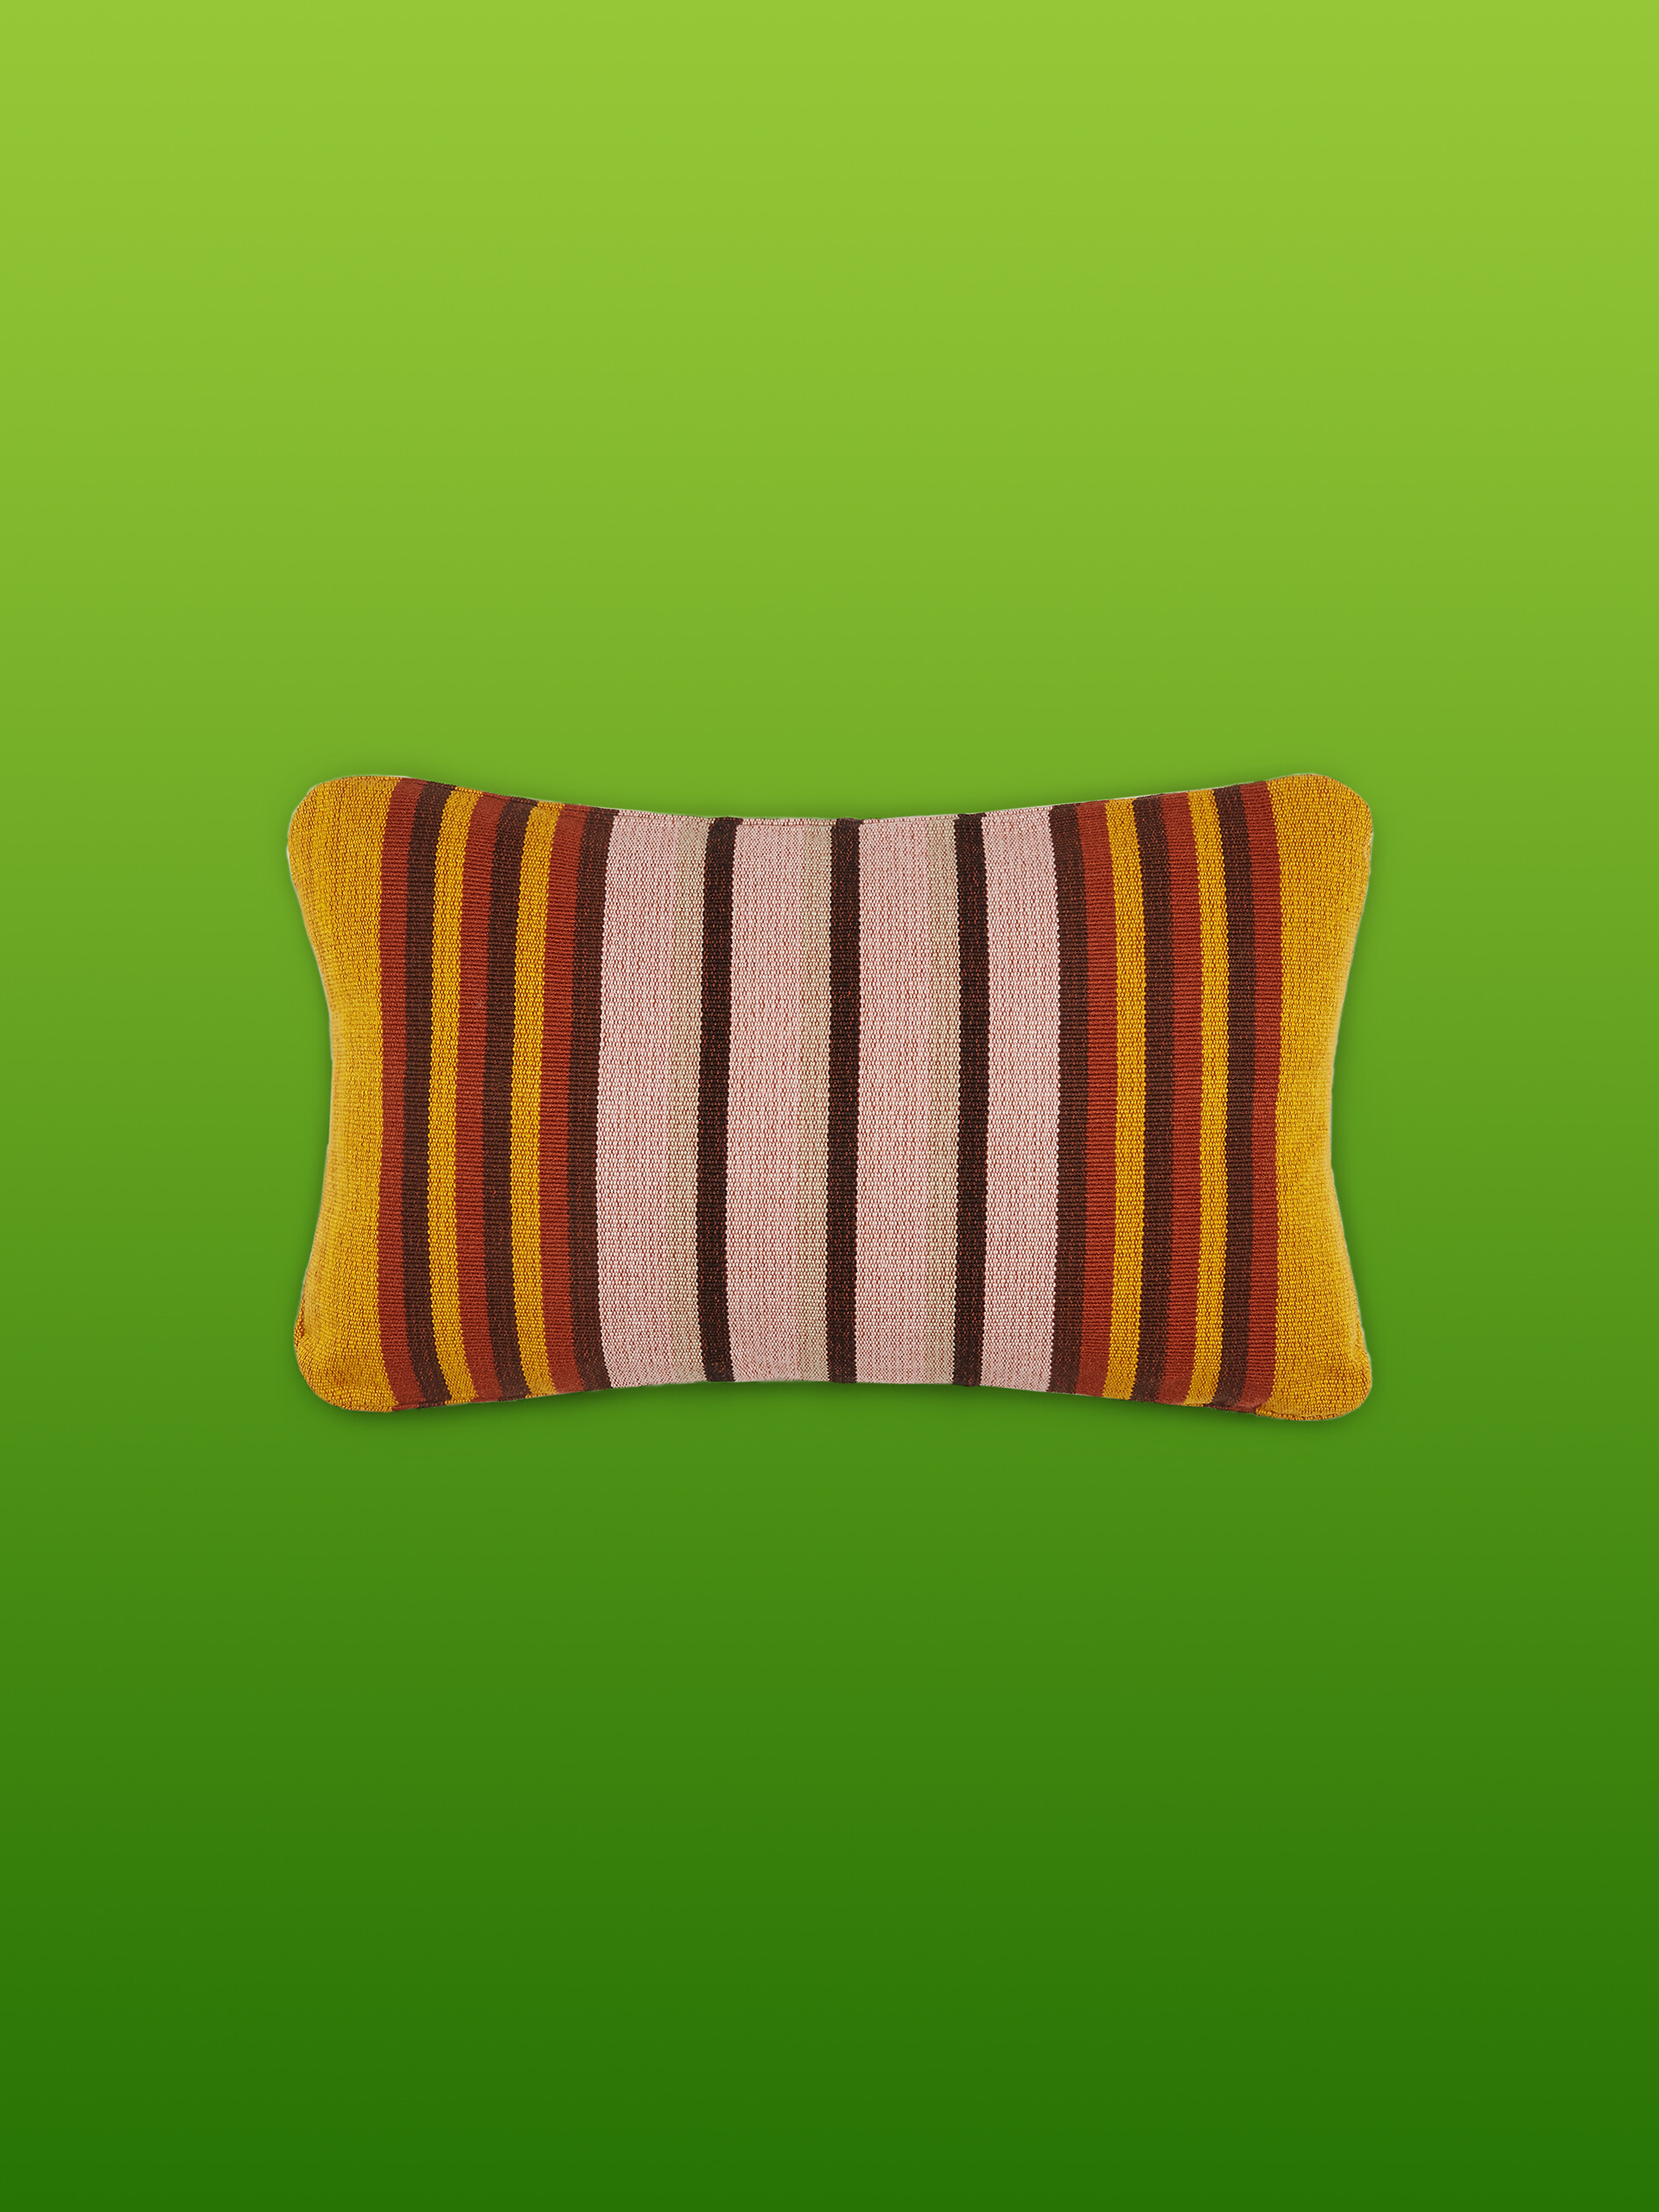 Fodera per cuscino rettangolare MARNI MARKET in poliestere giallo rosa e marrone - Arredamento - Image 1